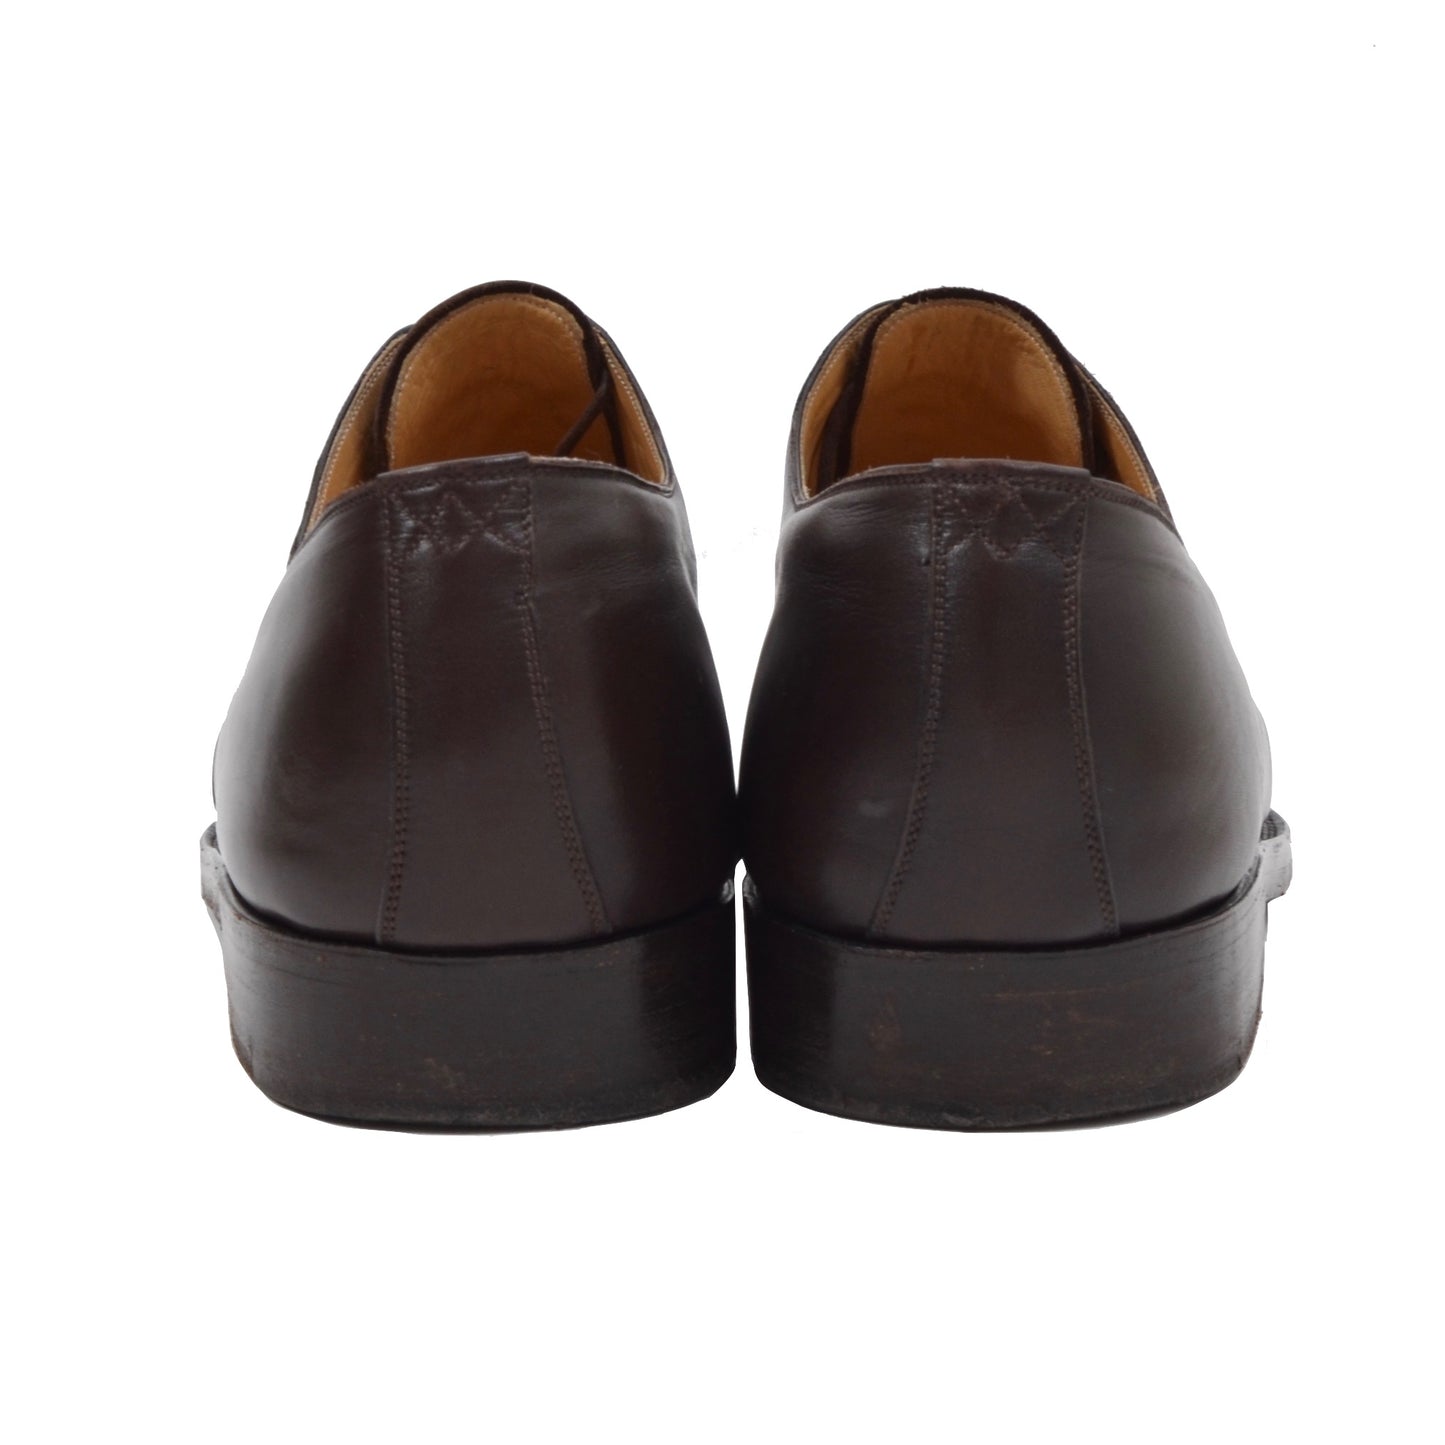 László Vass Cap Toe Shoes Size 46 - Dark Brown